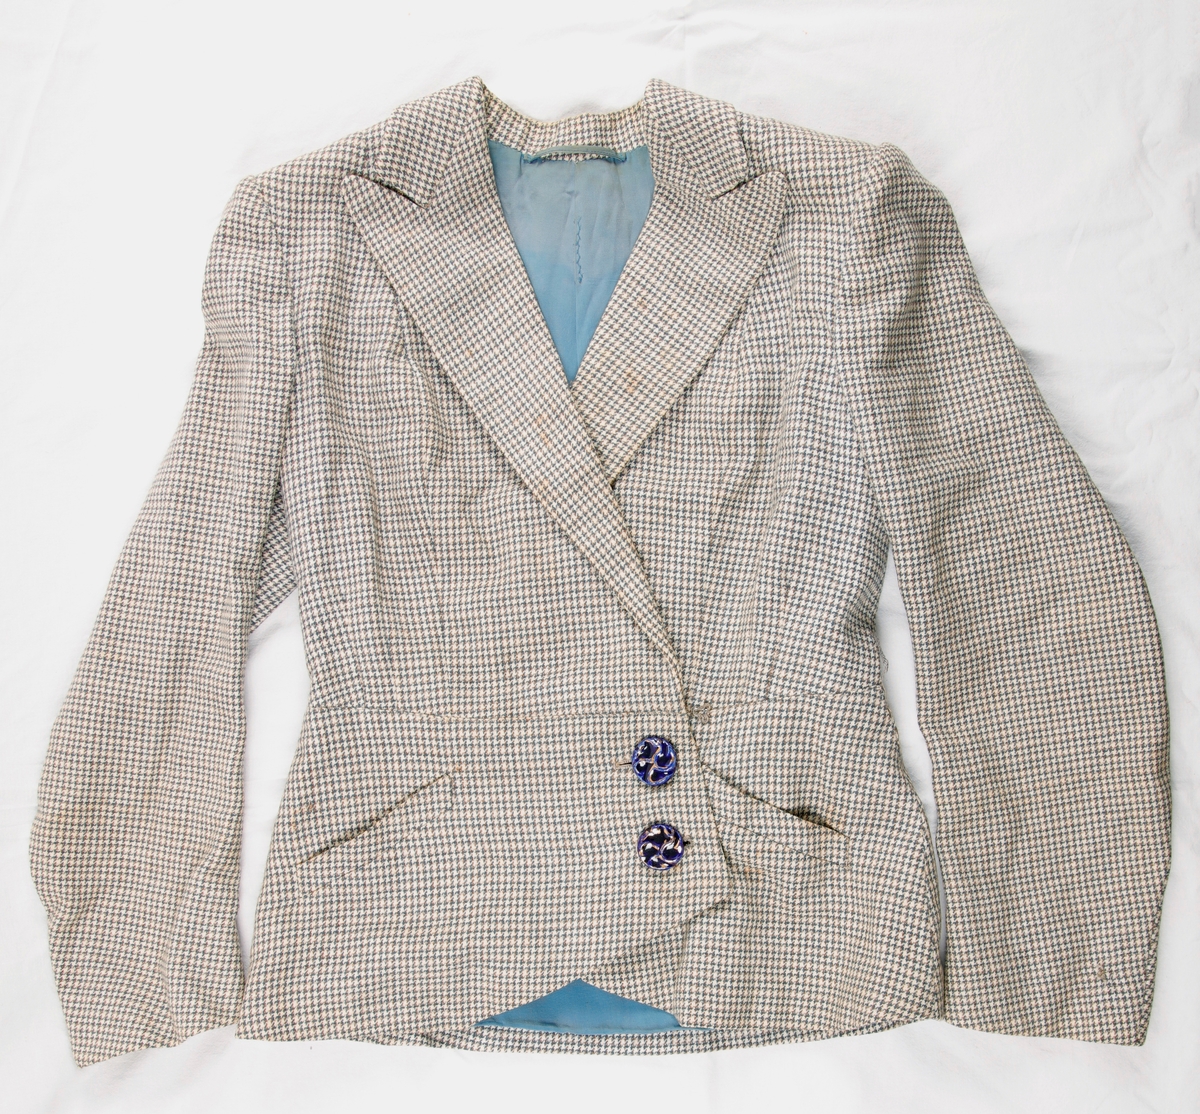 Jakke til drakt. Mønstervevet ulltekstil, foret med blått bomullstekstil. Skulderputer, jakkeslag. Lukking mot venstre, to blå knapper. To symmetrisk plasserte lommer på fremsiden av jakken.